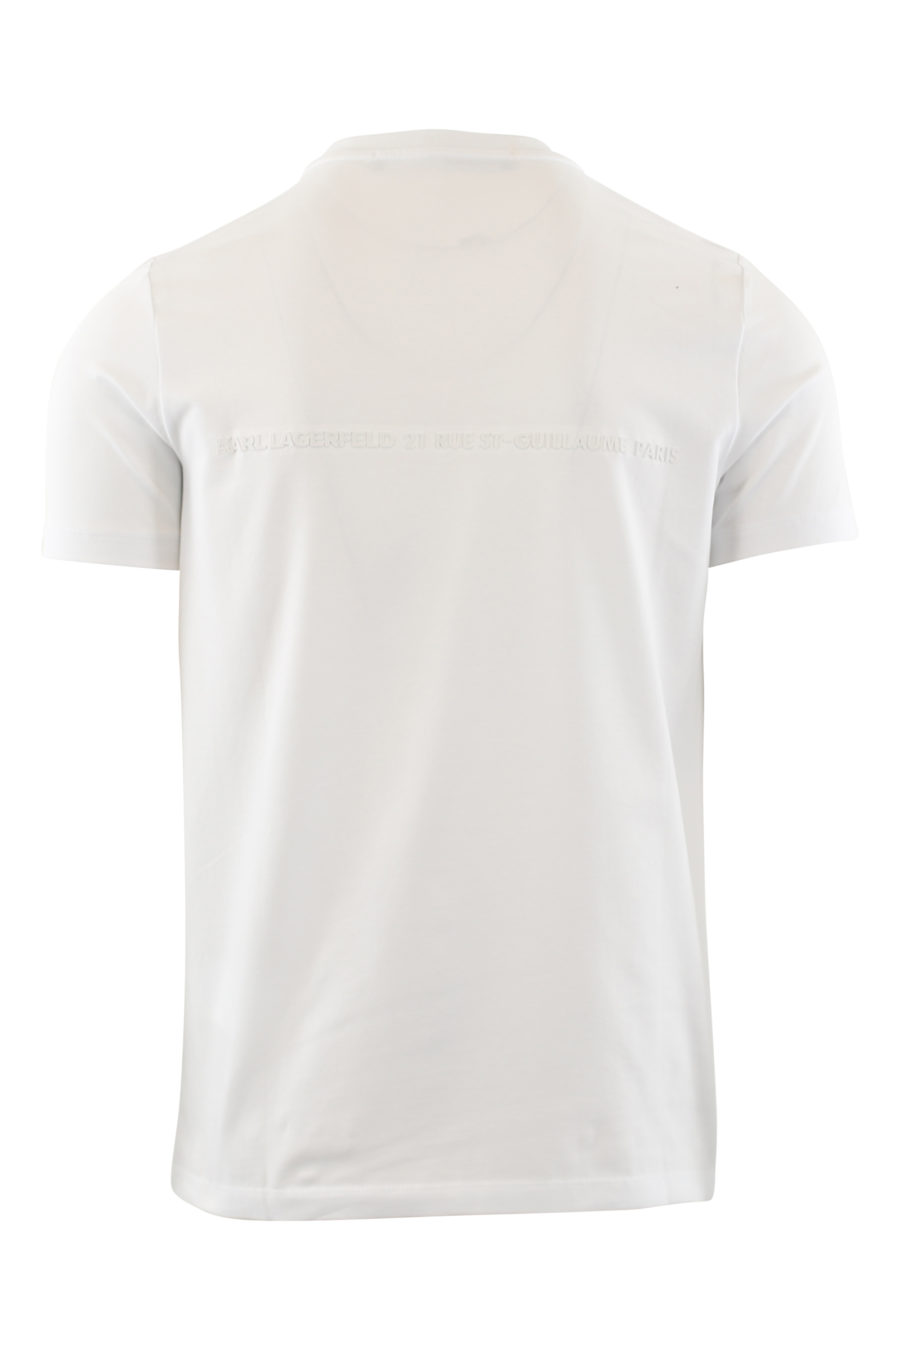 Camiseta blanca con logo de goma blanco - IMG 6526